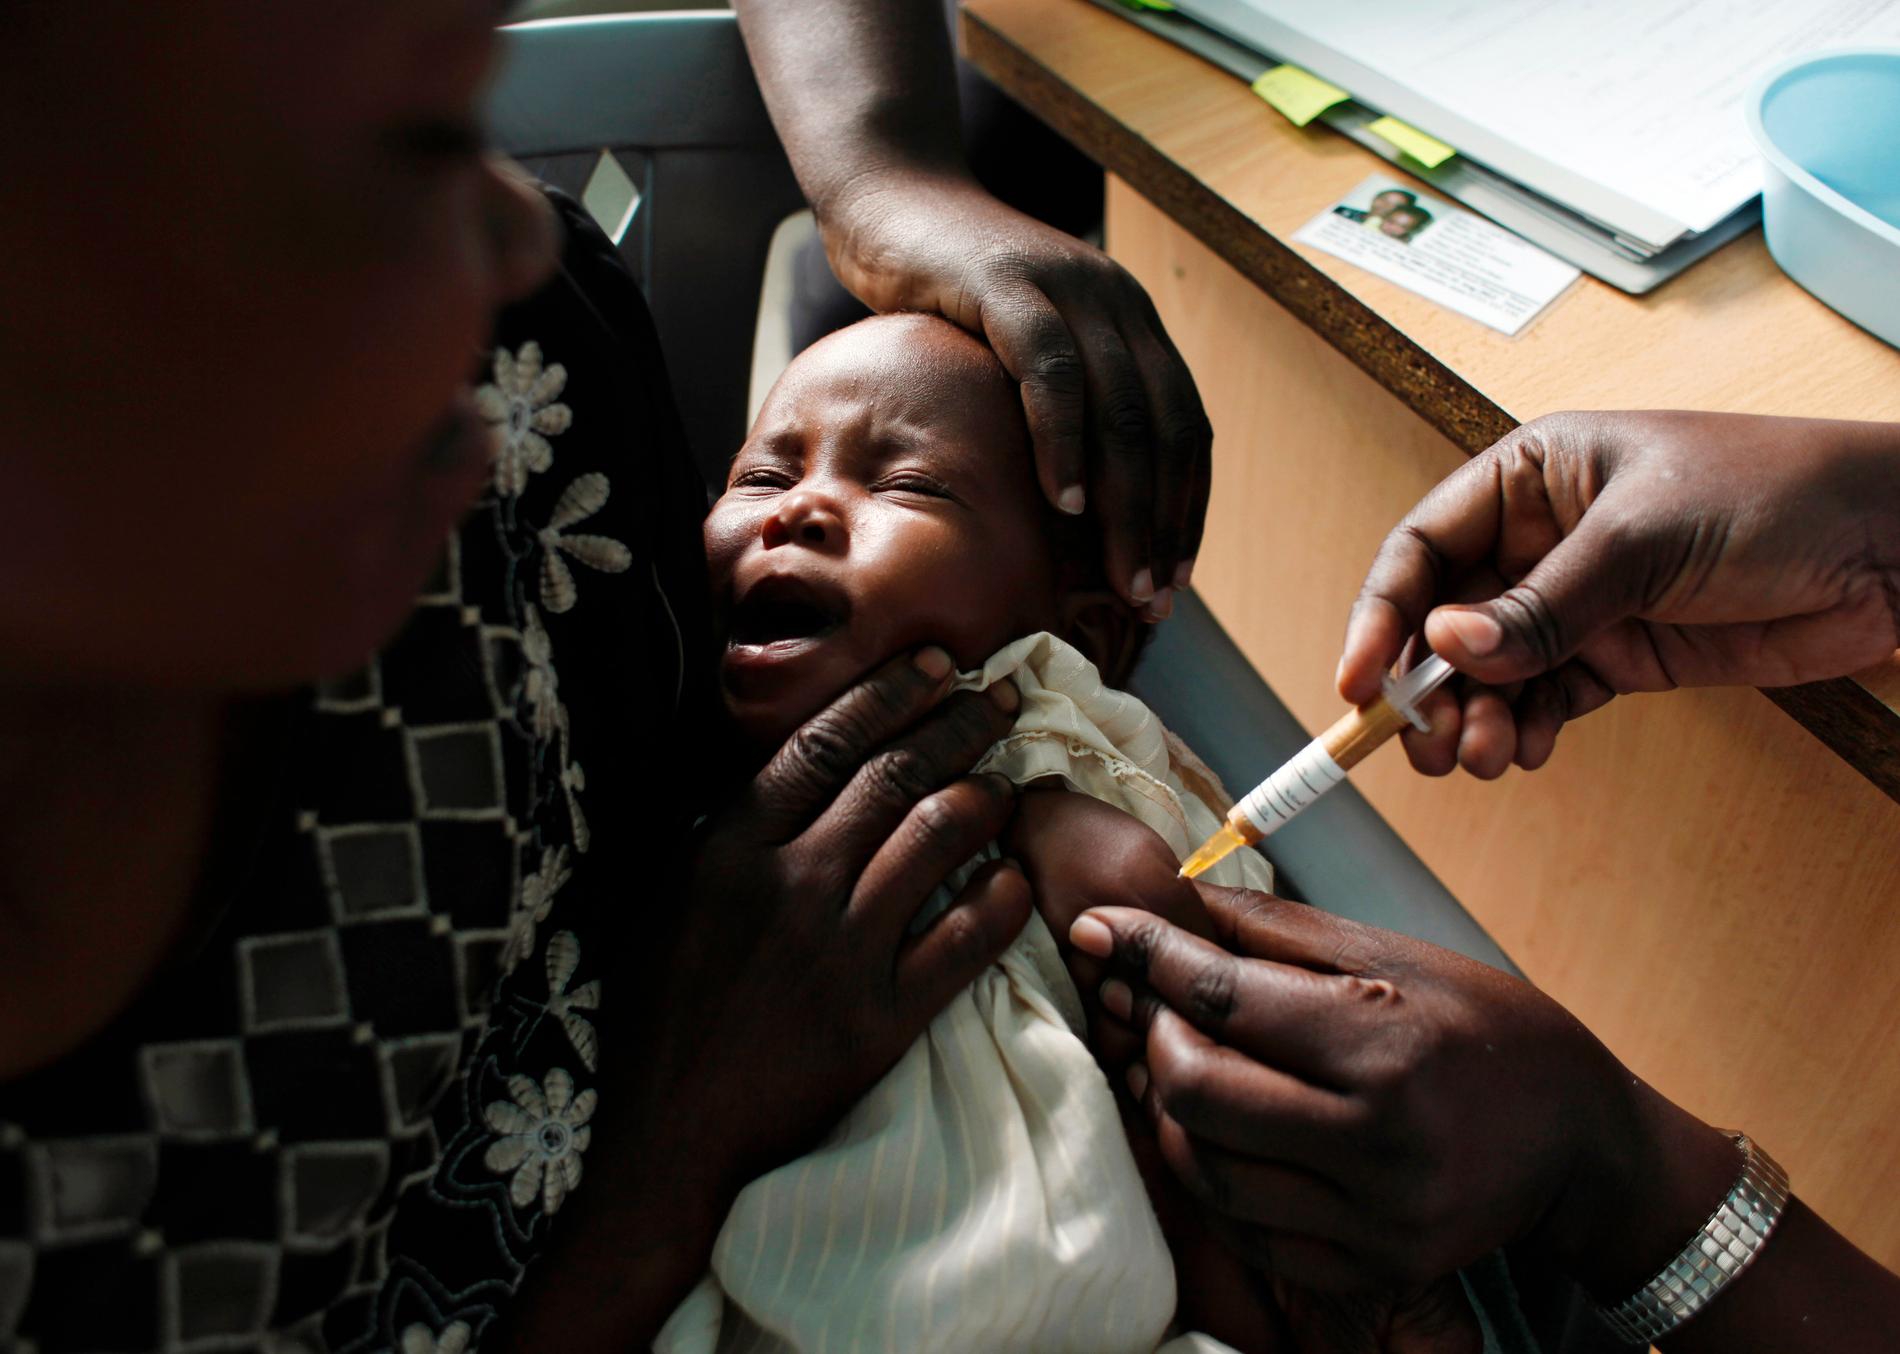 En mamma håller sitt barn medan barnet vaccineras för malaria i Kombewa i västra Kenya. WHO meddelade i augusti 2019 att det är teoretiskt möjligt att utplåna malaria, men inte med de felaktiga vacciner och kontrollmetoder som används för tillfället.